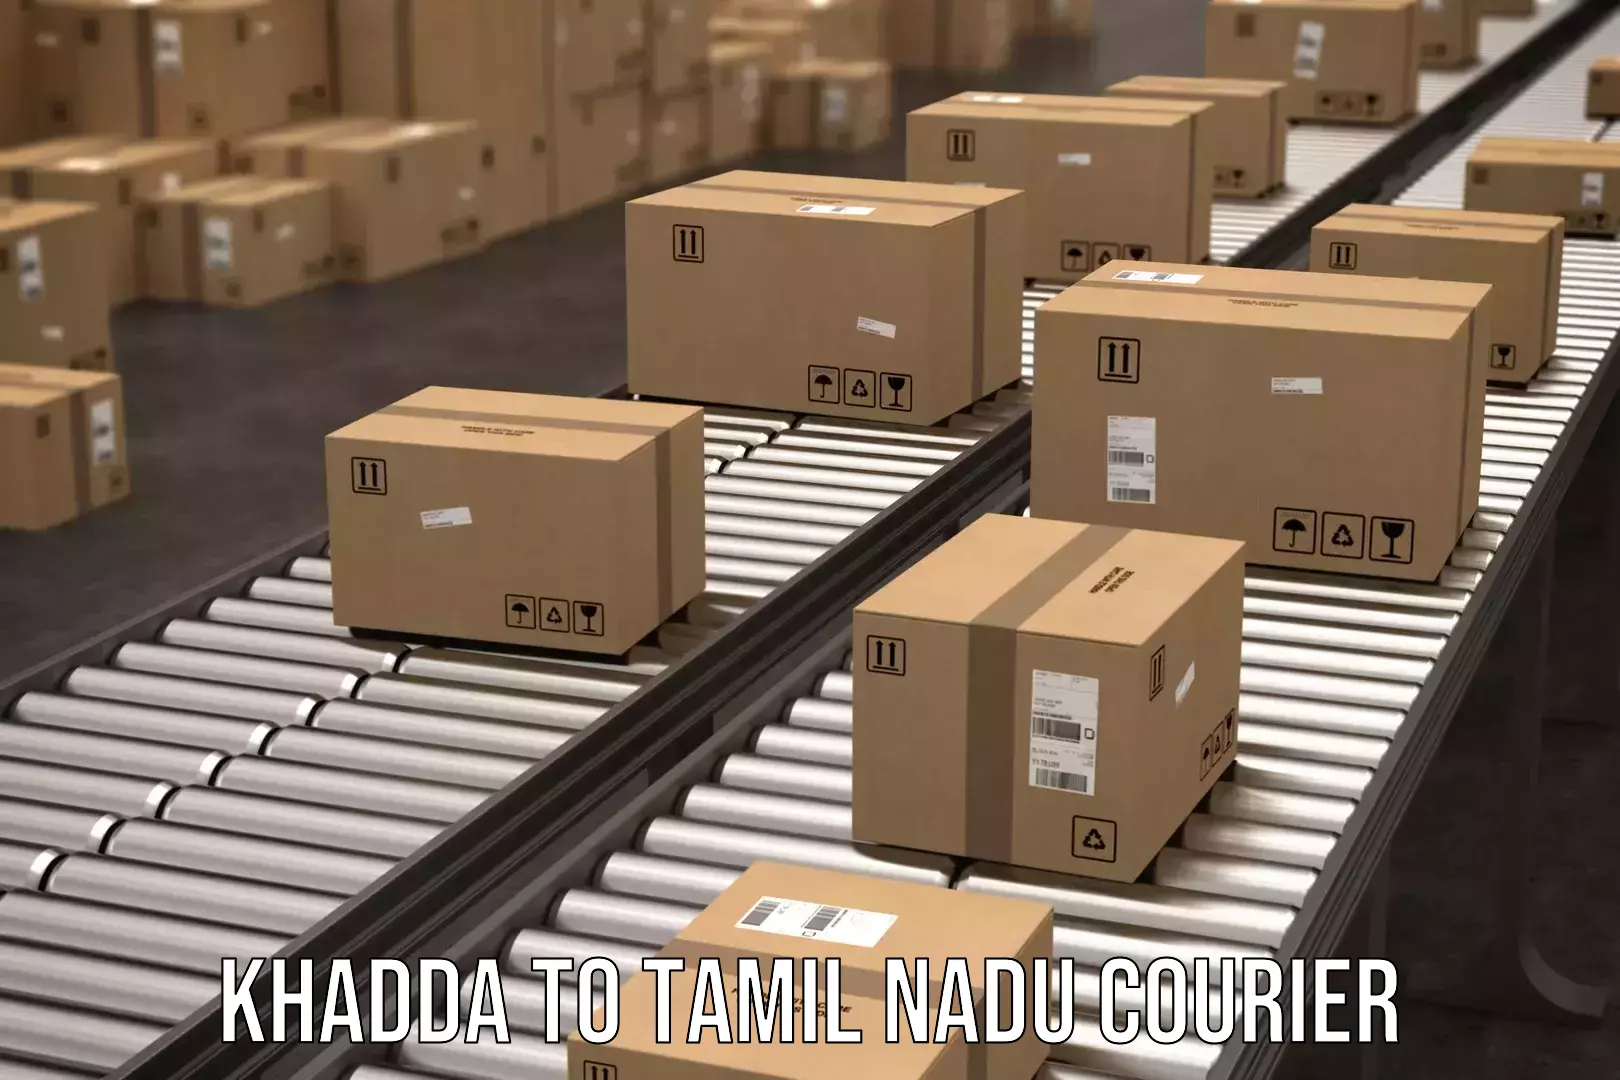 Nationwide shipping coverage Khadda to Tamil Nadu